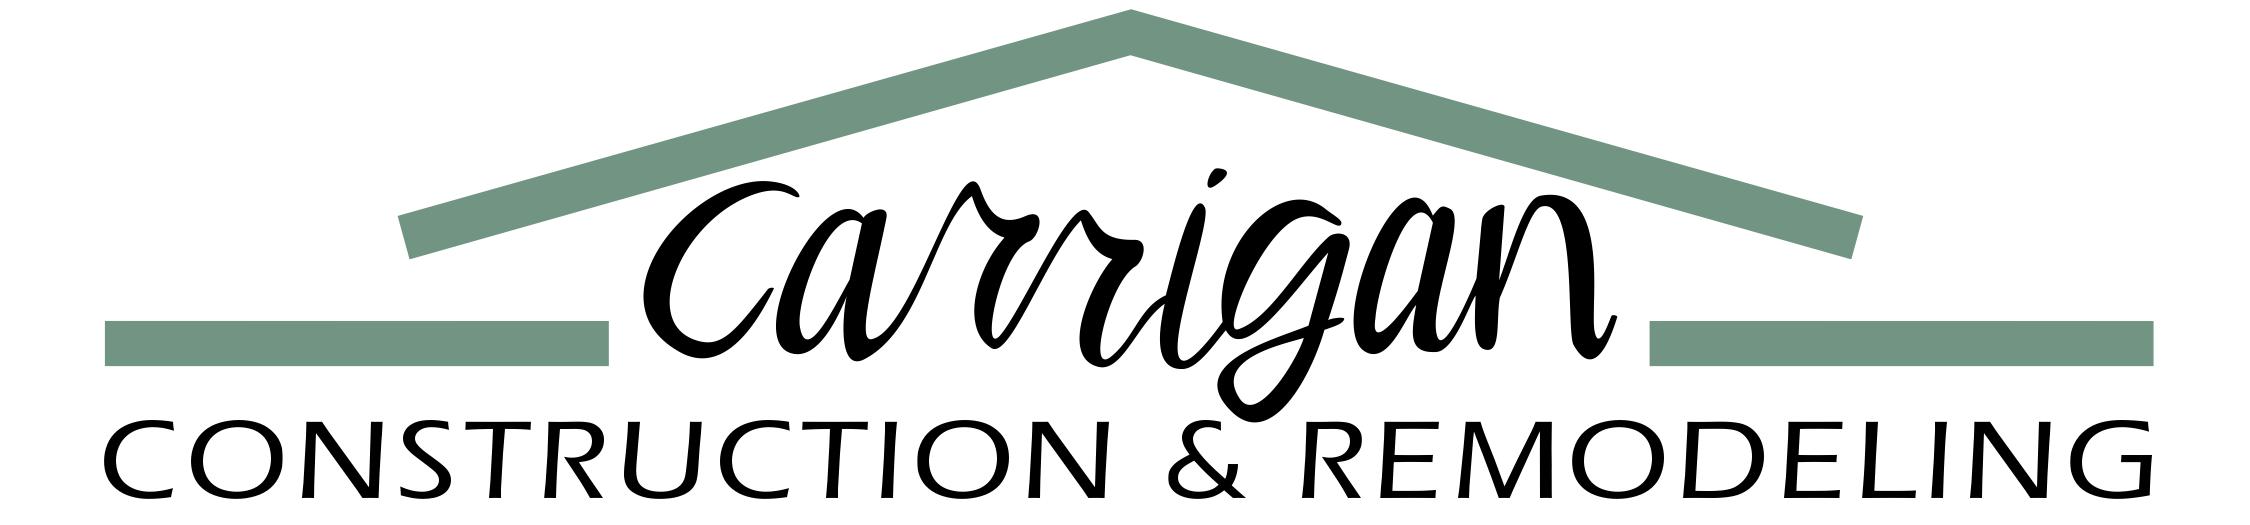 Carrigan Construction & Remodel, LLC Logo